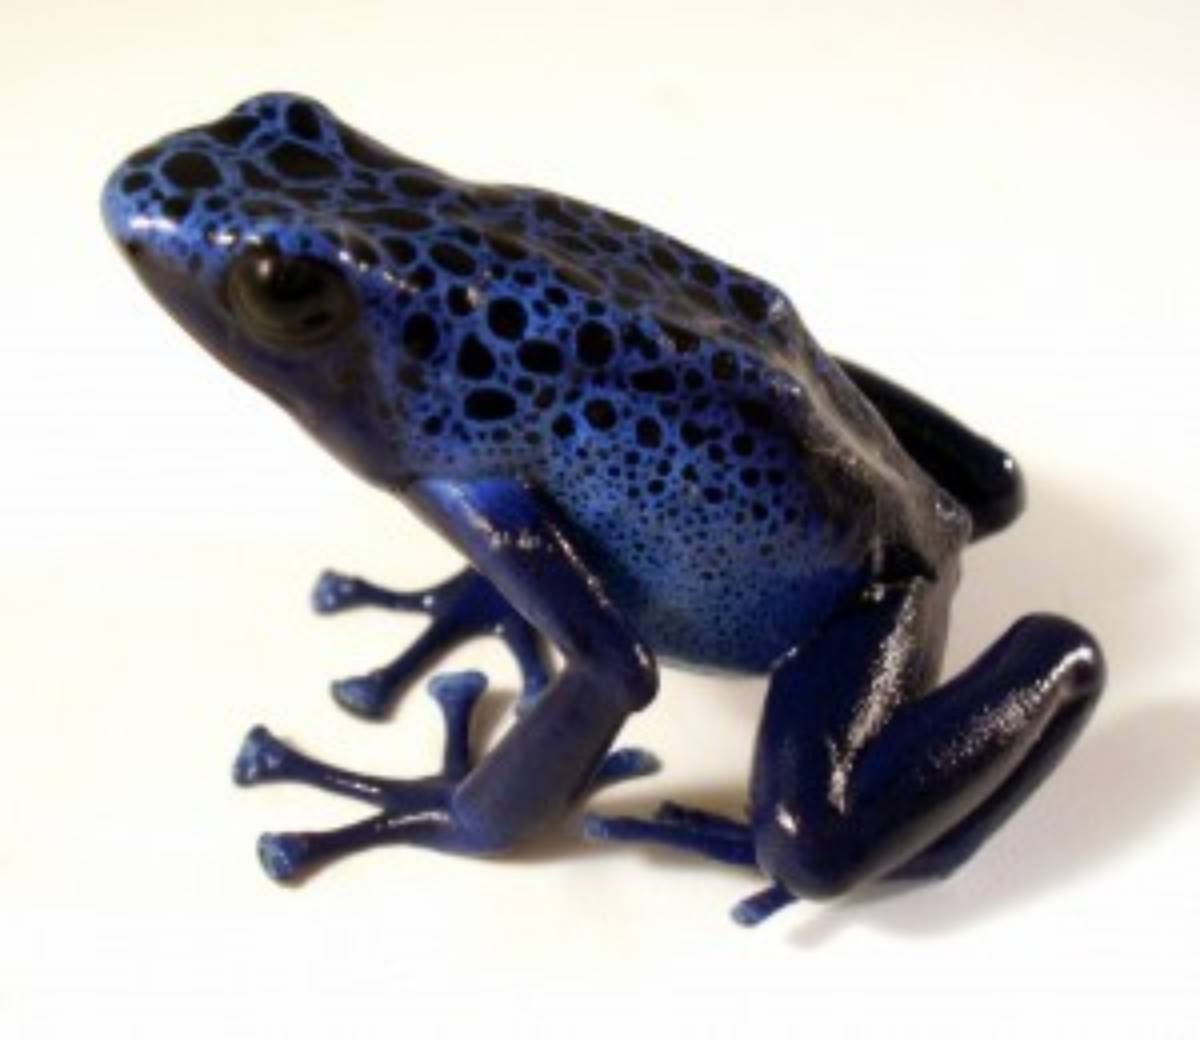 Dendrobates tinctorius 'Azureus' poison dart frog